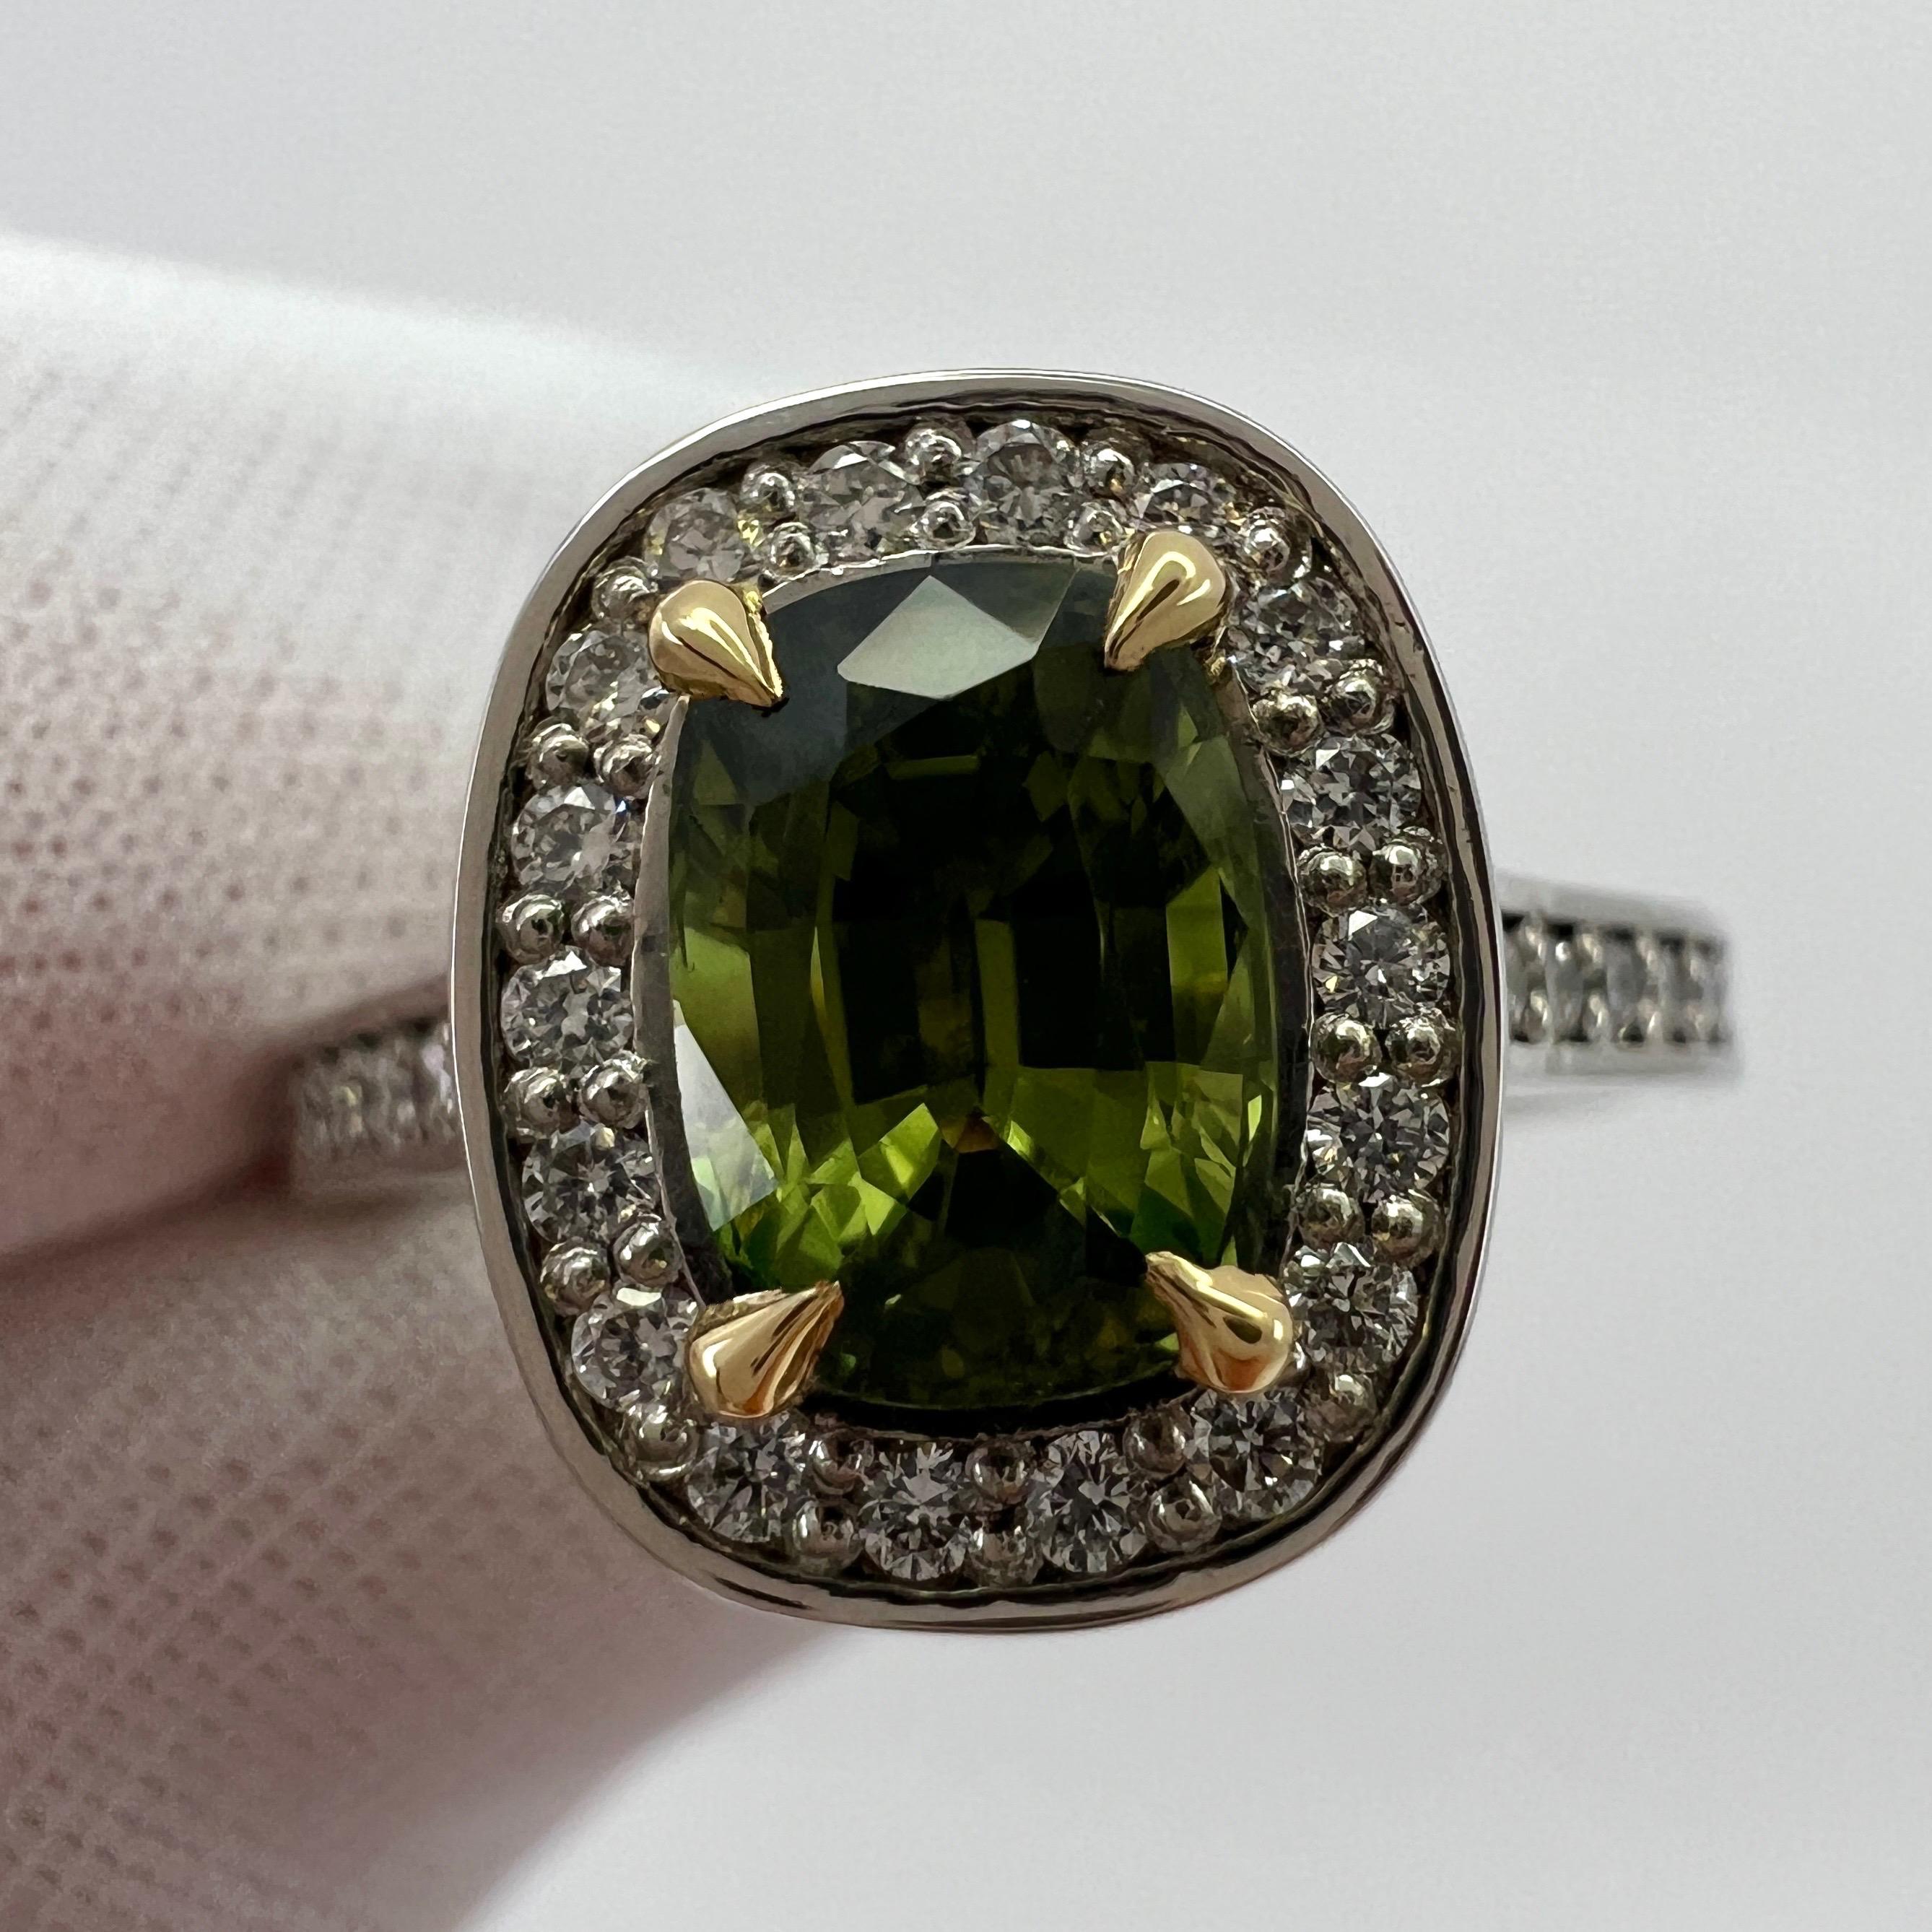 GIA Certified Vivid Green Thai Saphir und Diamant 18k Gelb und Weißgold Halo Ring.

1,50 Karat thailändischer Saphir mit einer atemberaubenden leuchtend grüngelben Farbe. Vollständig von GIA zertifiziert, was bestätigt, dass der Stein natürlich,